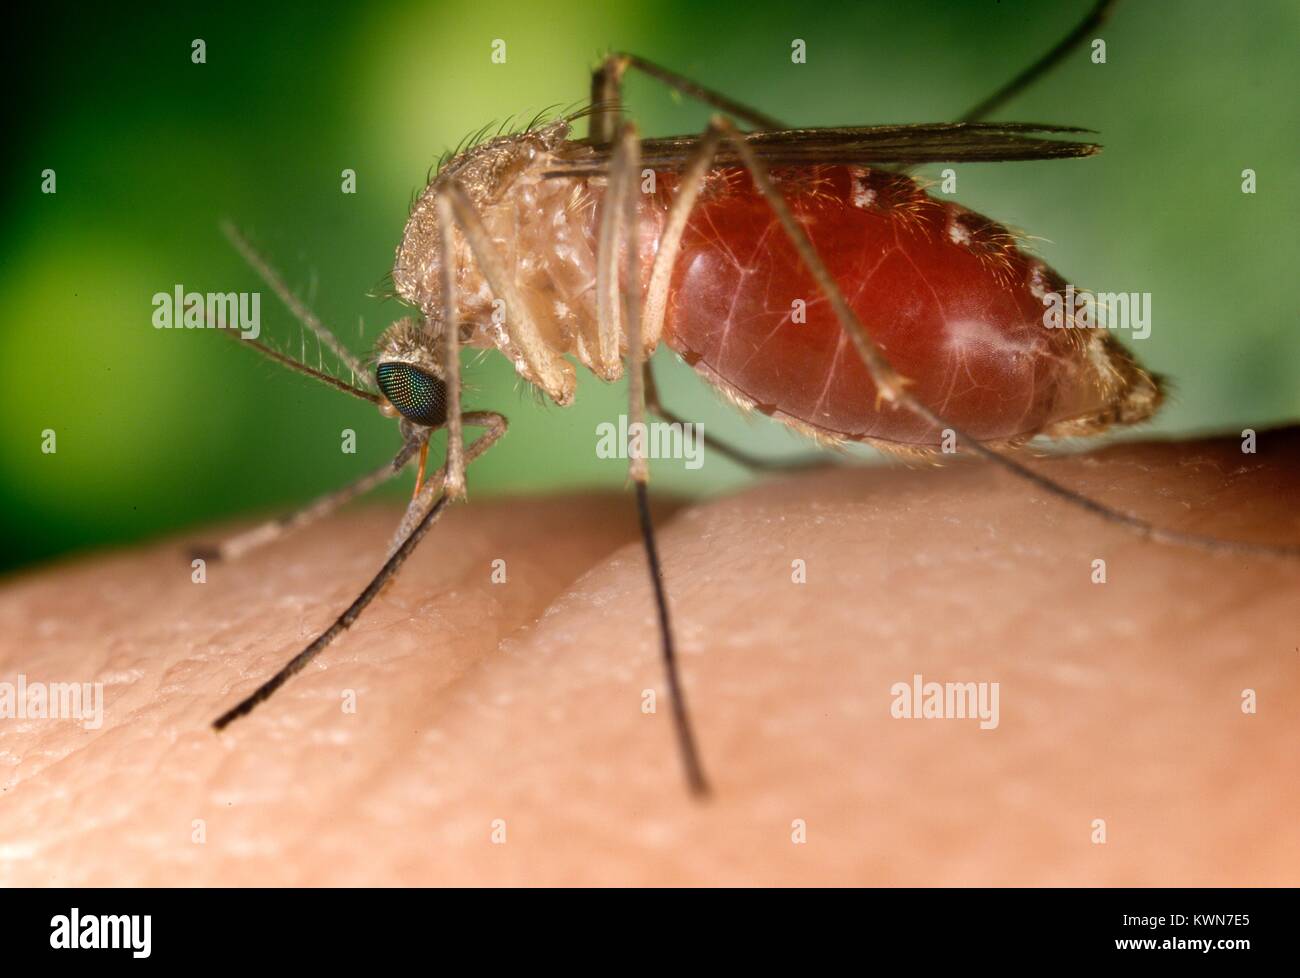 Noto come vettore per il virus del Nilo occidentale, questa zanzara Culex quinquefasciatus mosquito ha atterrato su un dito umano ed è mordere la persona colpita dalla malattia della cute, 2003. Immagine cortesia CDC/Jim Gathany. Foto Stock